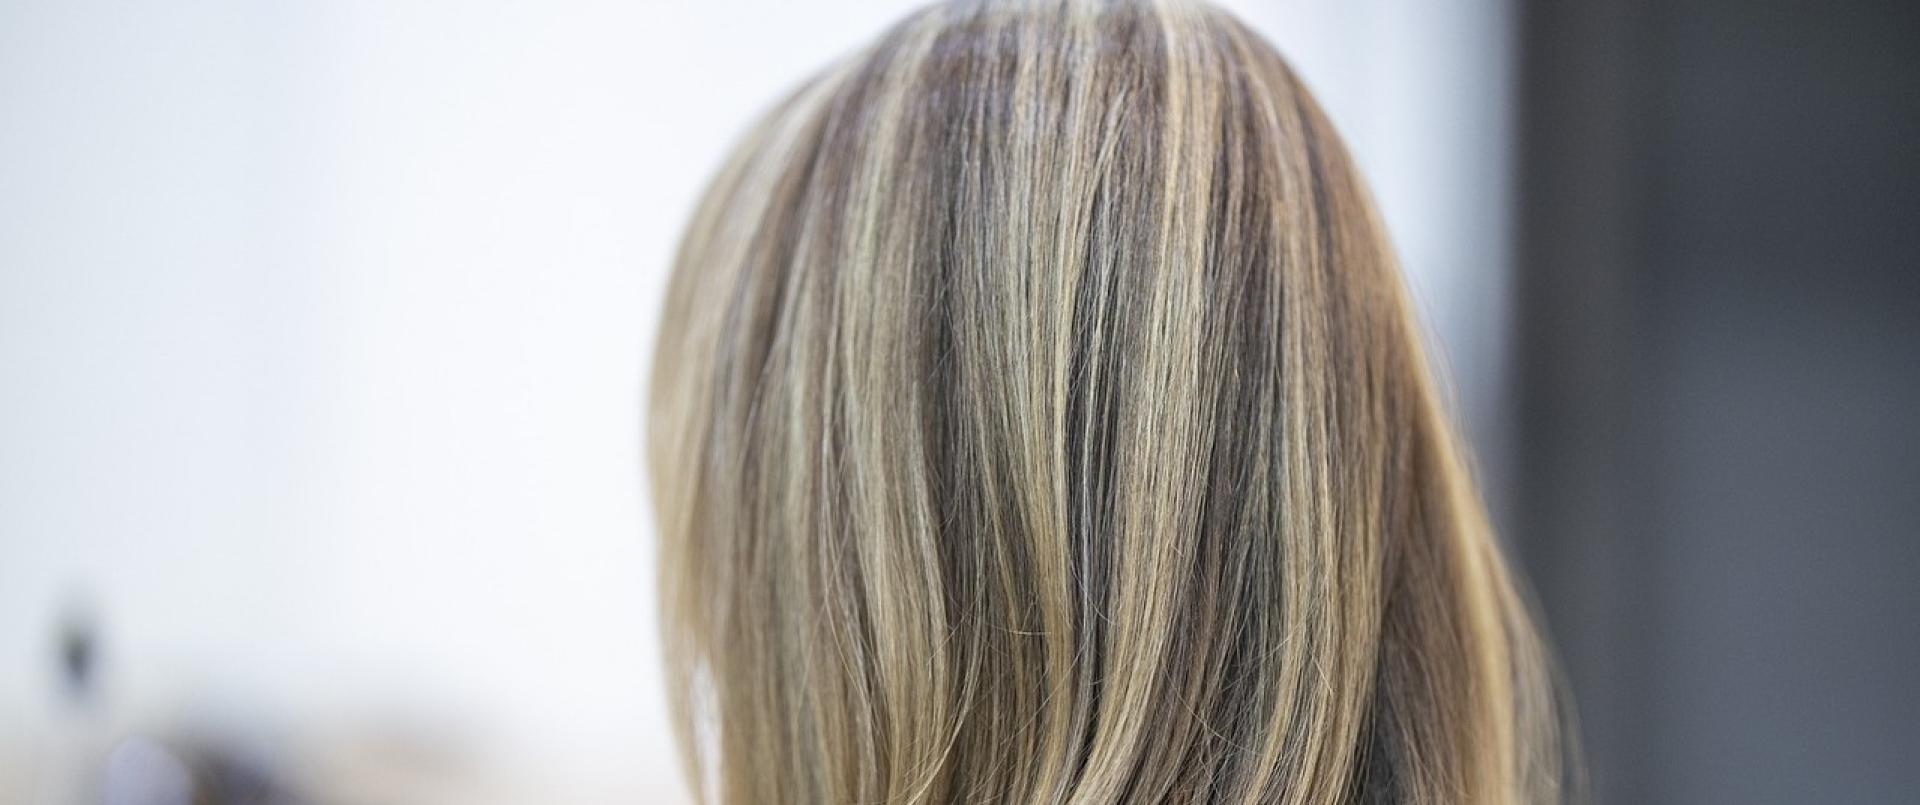 Trwałe farby fryzjerskie – mniejsze zużycie, poprawa wydajności i satysfakcja klientów 